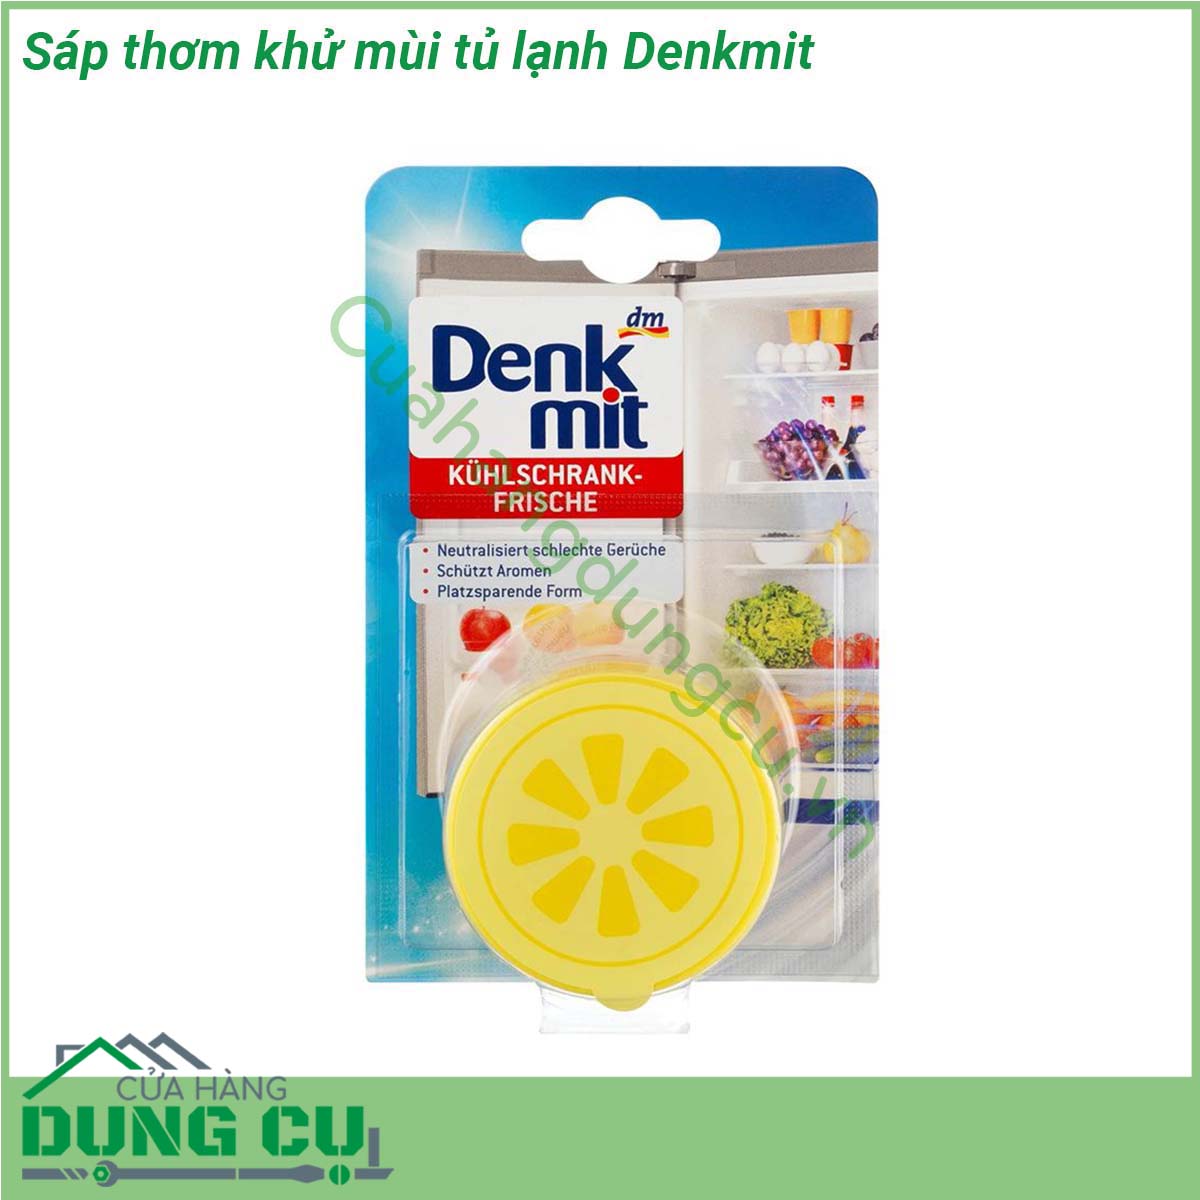 Sáp thơm khử mùi tủ lạnh Denkmit được thiết kế rất đơn giản nhỏ gọn  được sản xuất theo công nghệ hiện đại đến từ Đức chiết xuất từ rong biển - thành phần có sẵn trong tự nhiên có tác dụng trung hòa các loại mùi hôi khó chịu trong tủ lạnh  